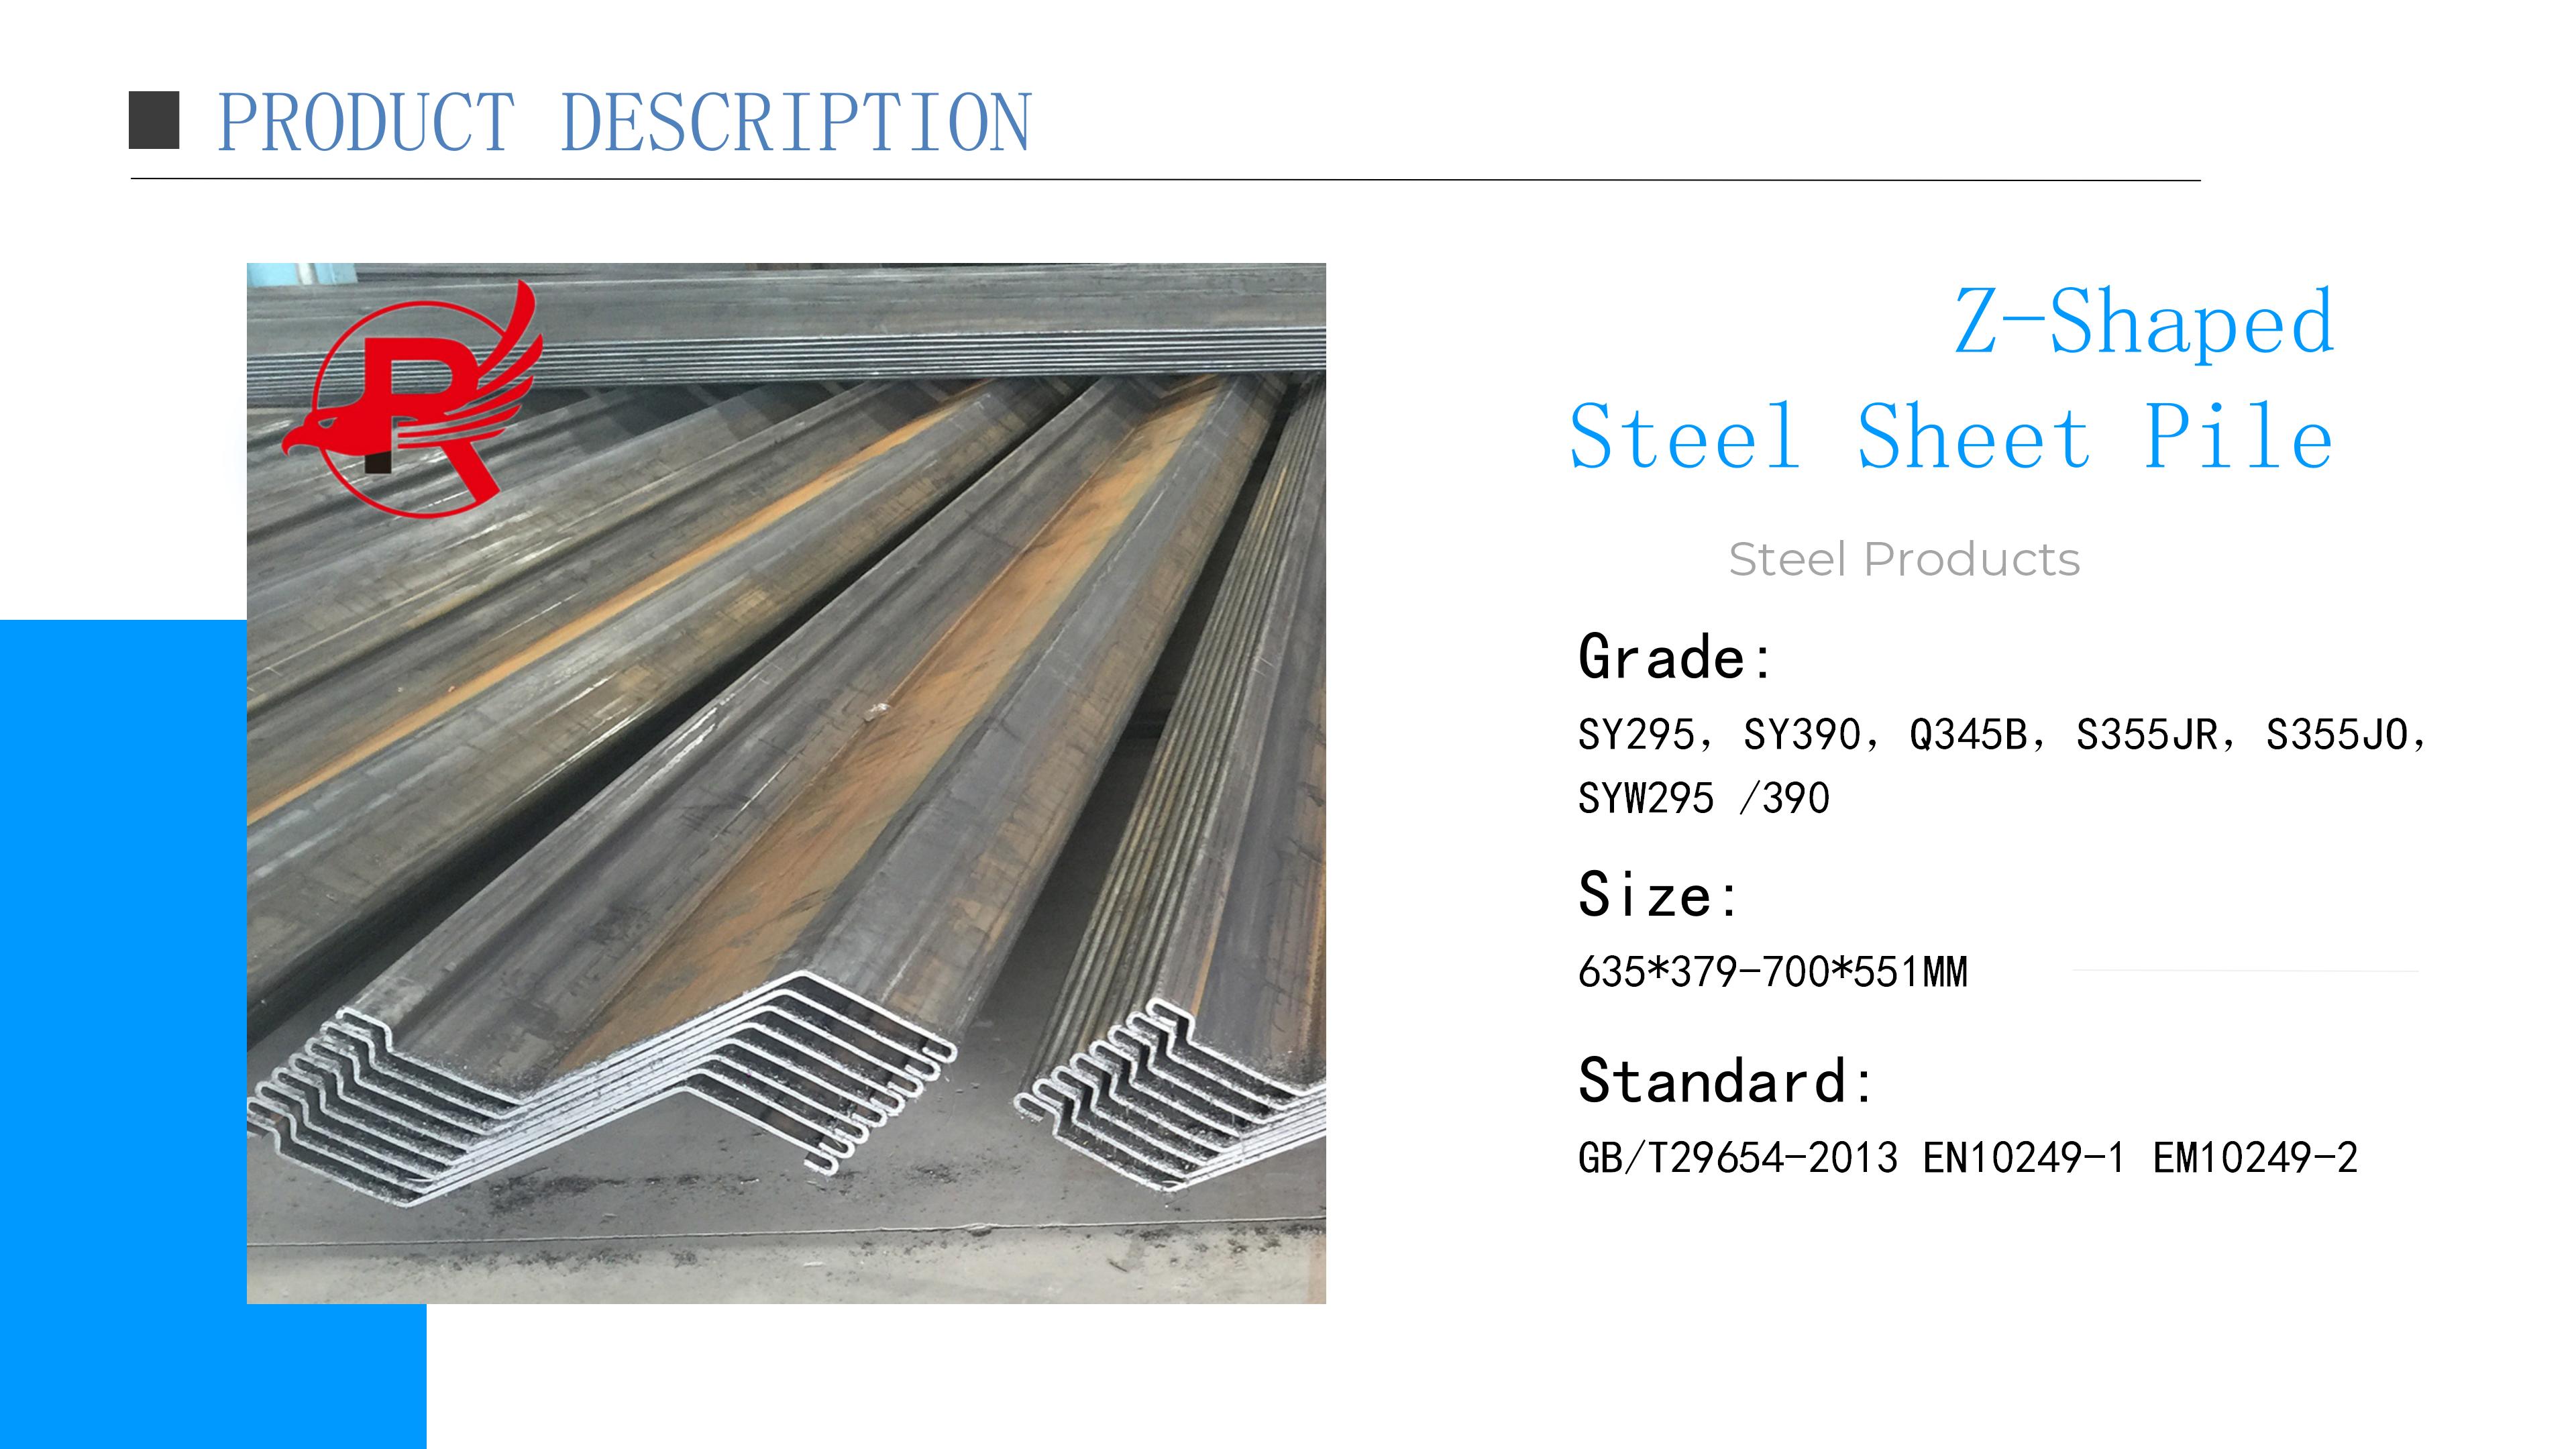 Cold-formed z-shaped steel sheet pile